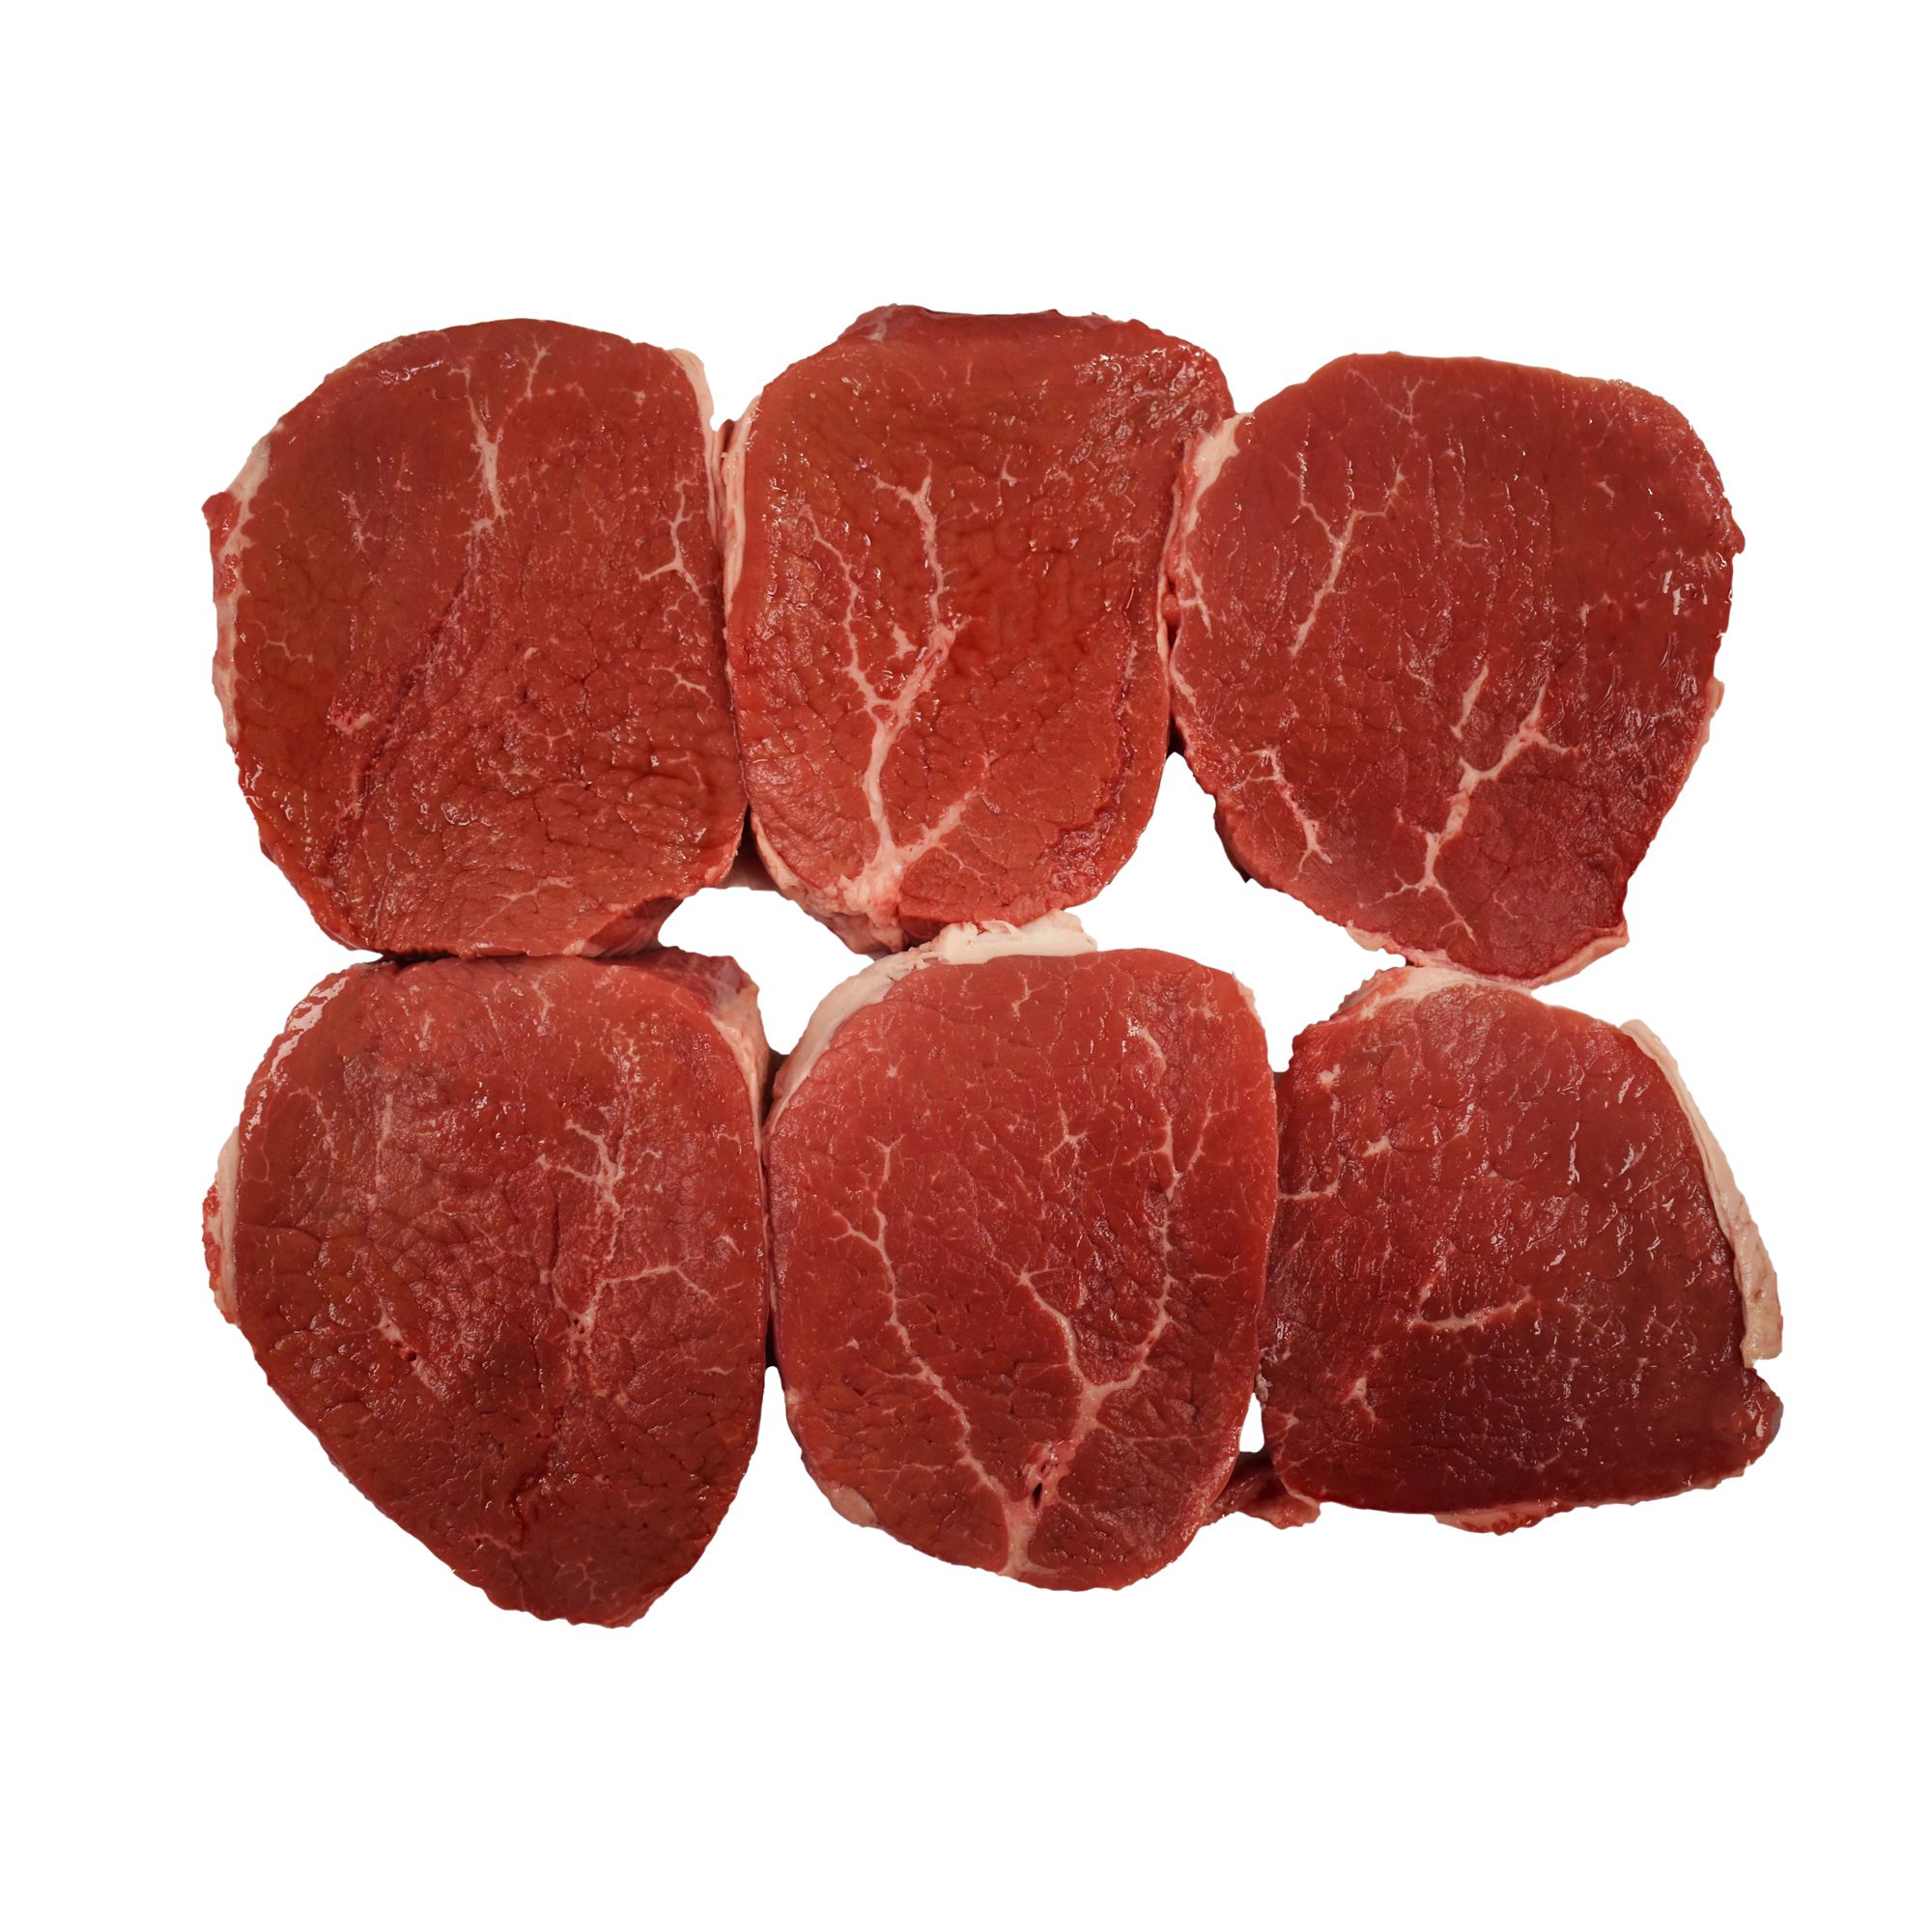 USDA Choice Beef Round Eye of Round Steak,  2.75-3.5 lbs.